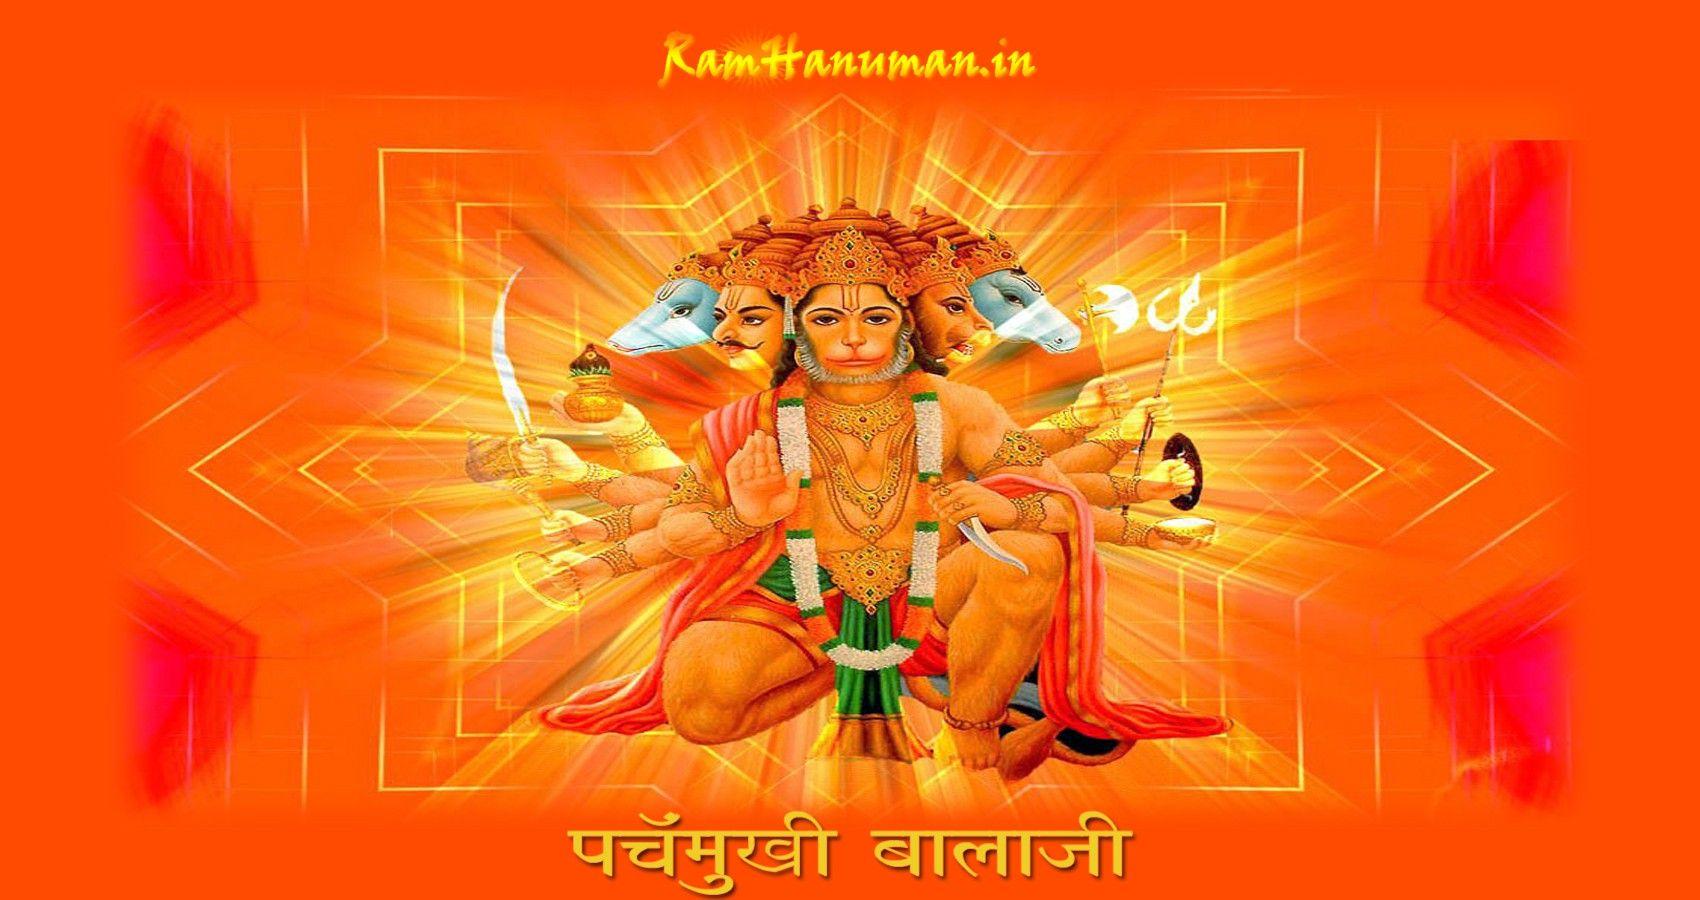 Panchmukhi Hanuman Wallpapers - Top Những Hình Ảnh Đẹp